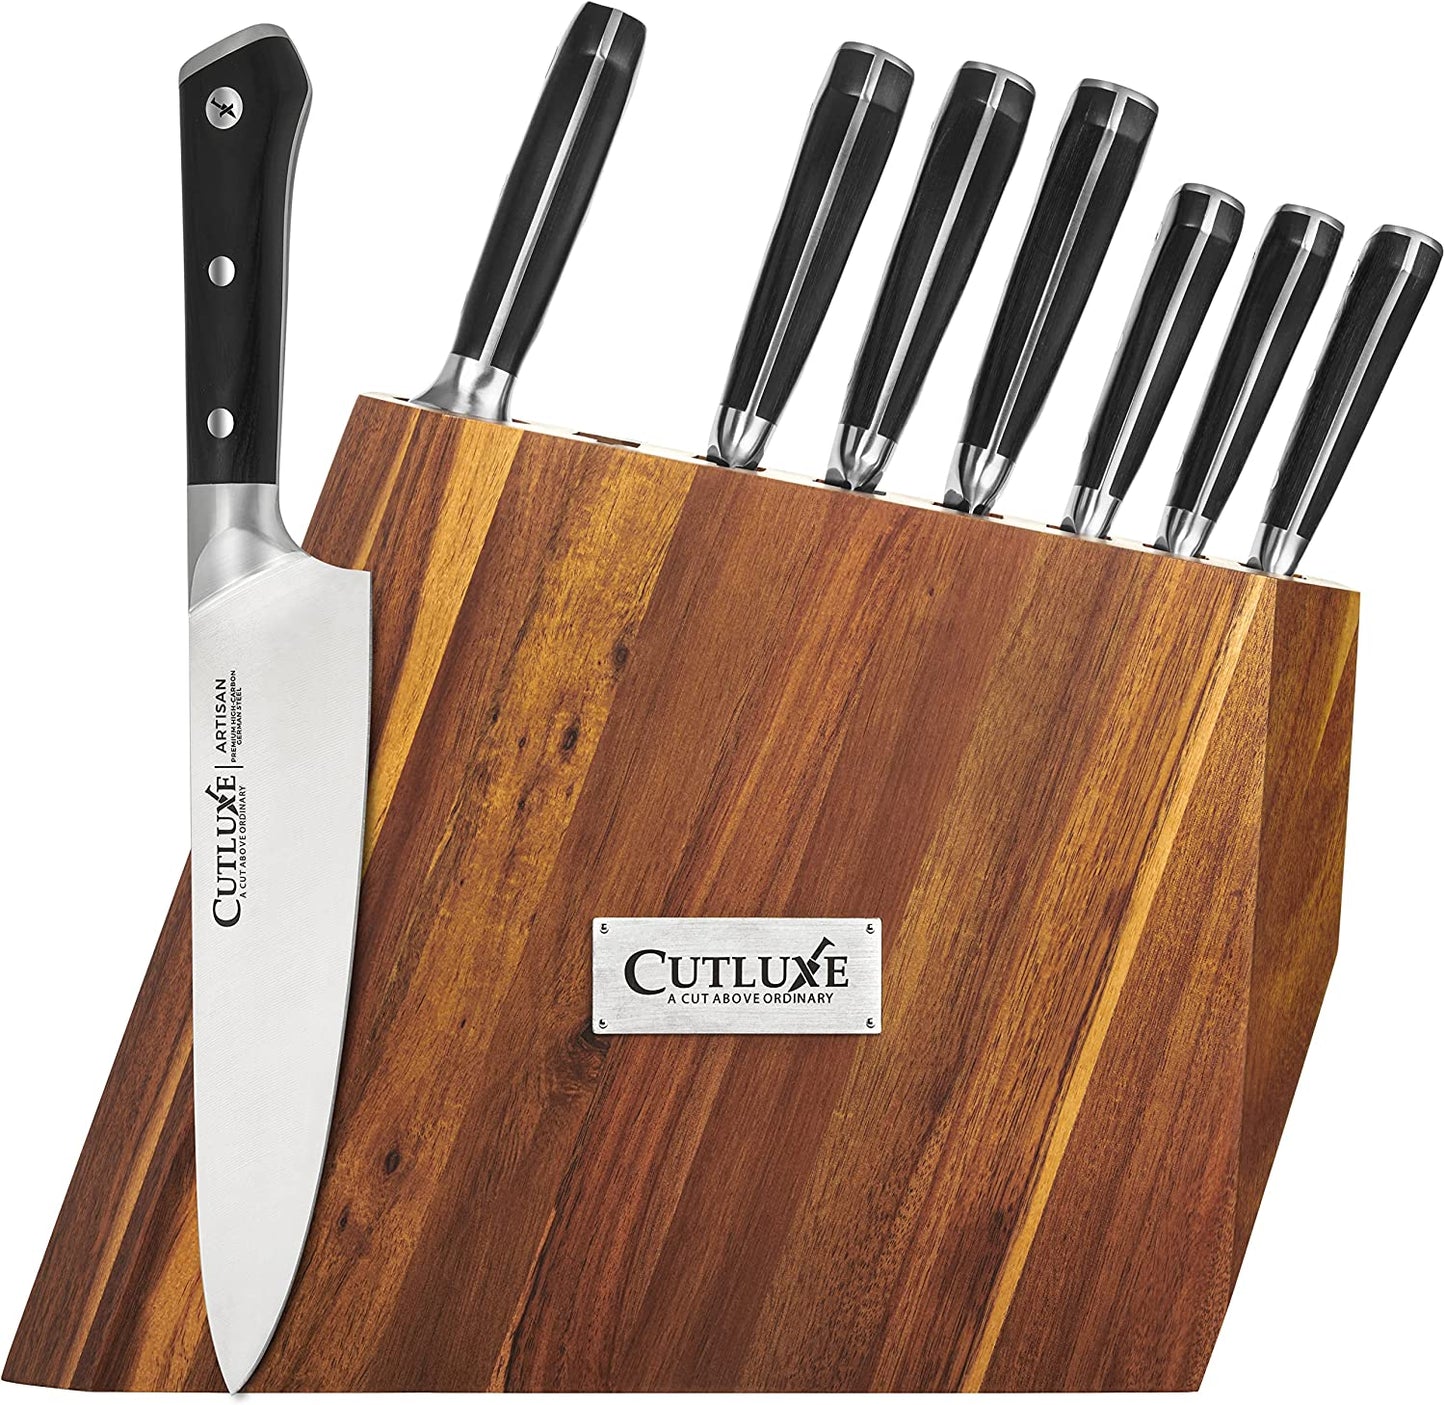 Buy Cutluxe 8-Piece Knife Block Set Online